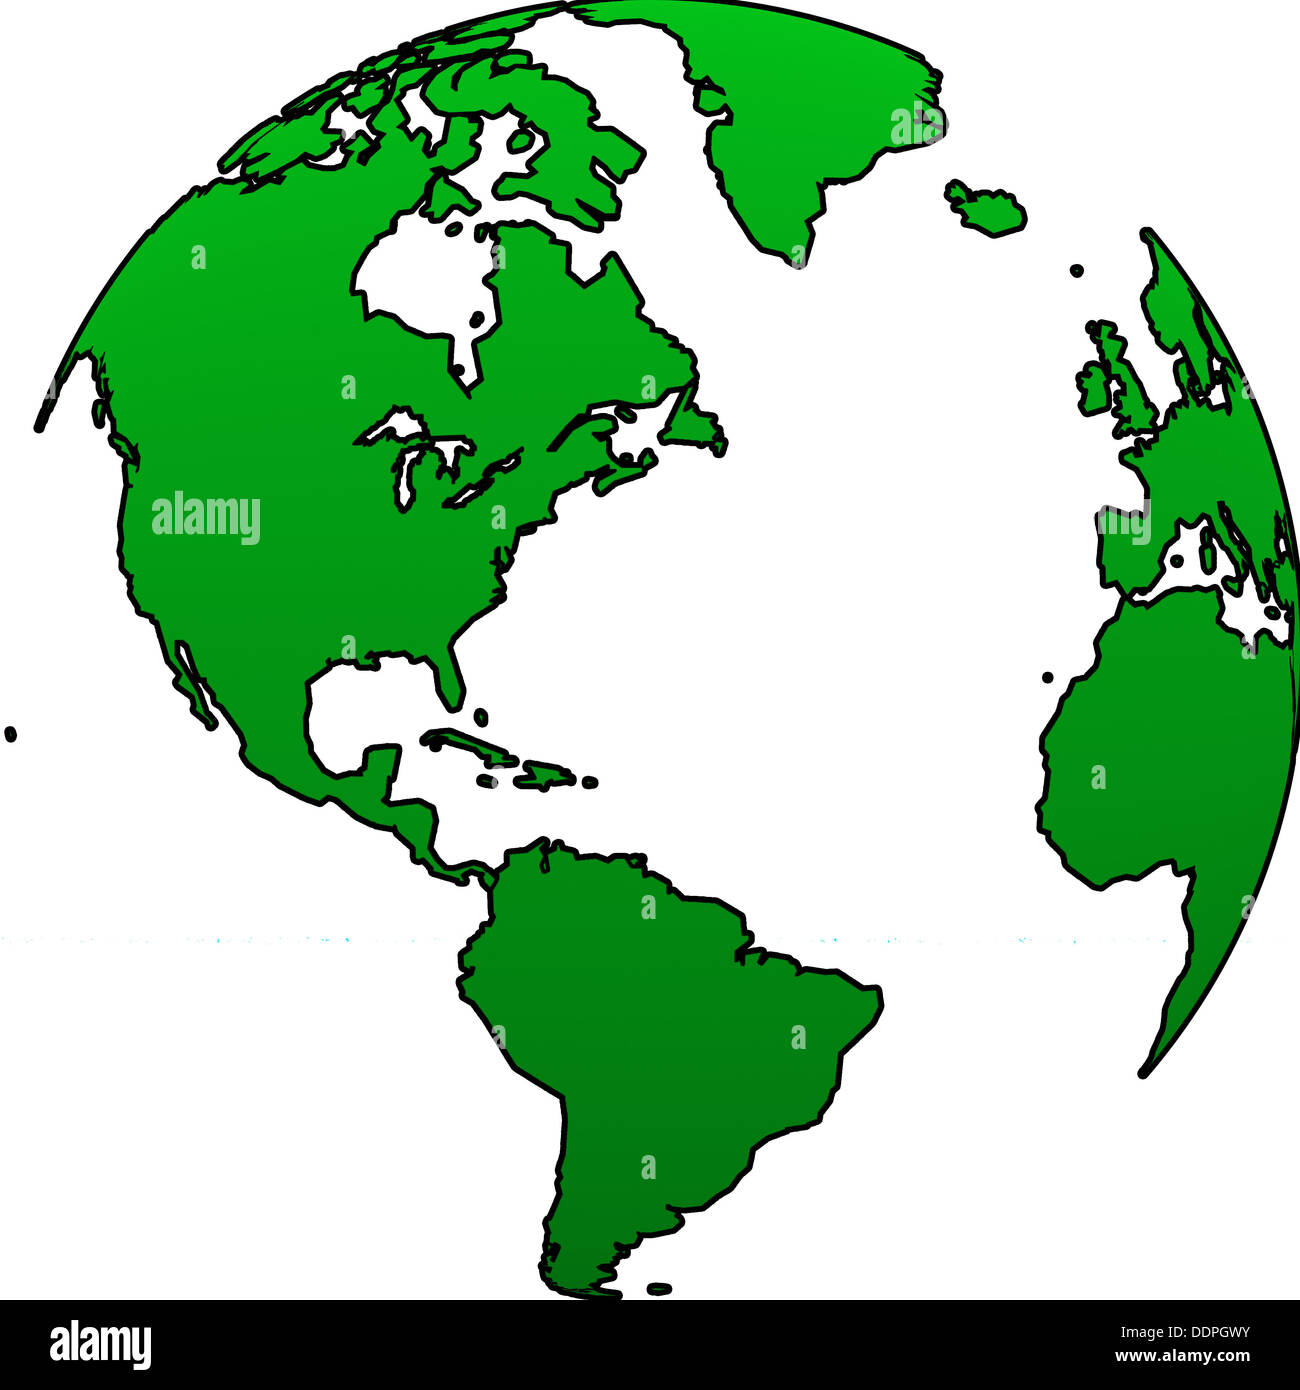 World globe illustration on a white background Stock Photo